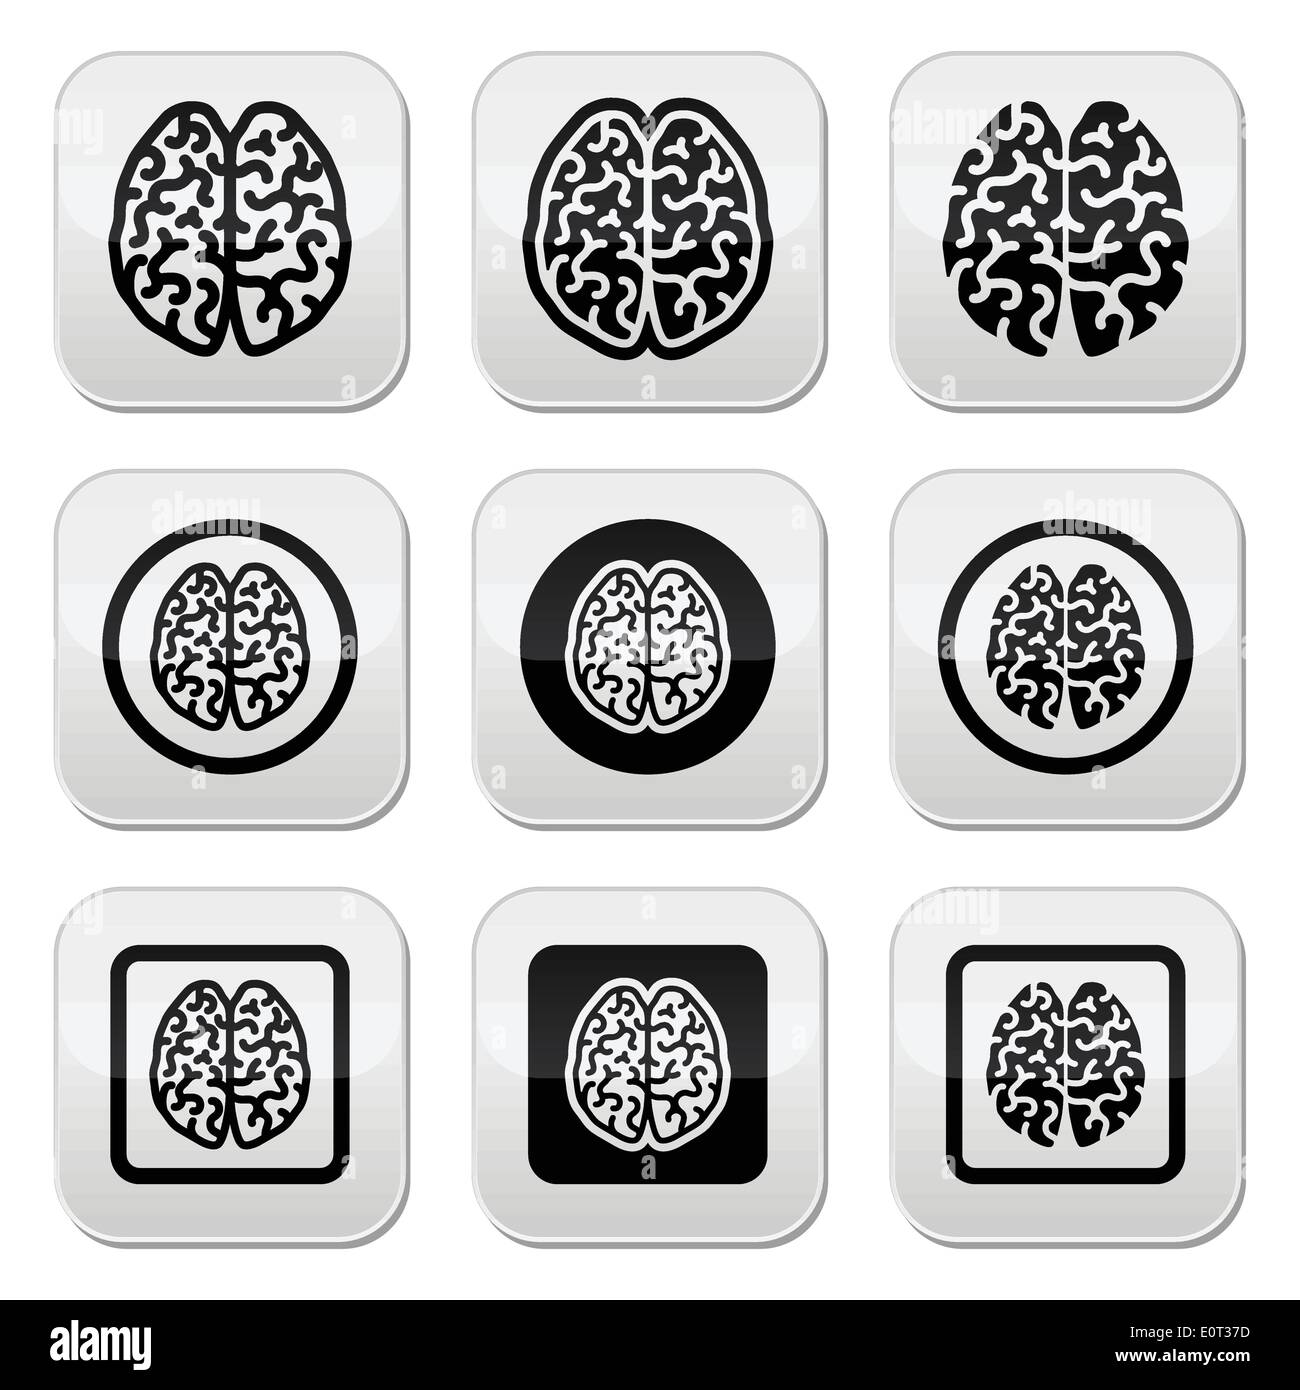 Cervello umano di set di icone - intelligenza, creatività concetto Illustrazione Vettoriale